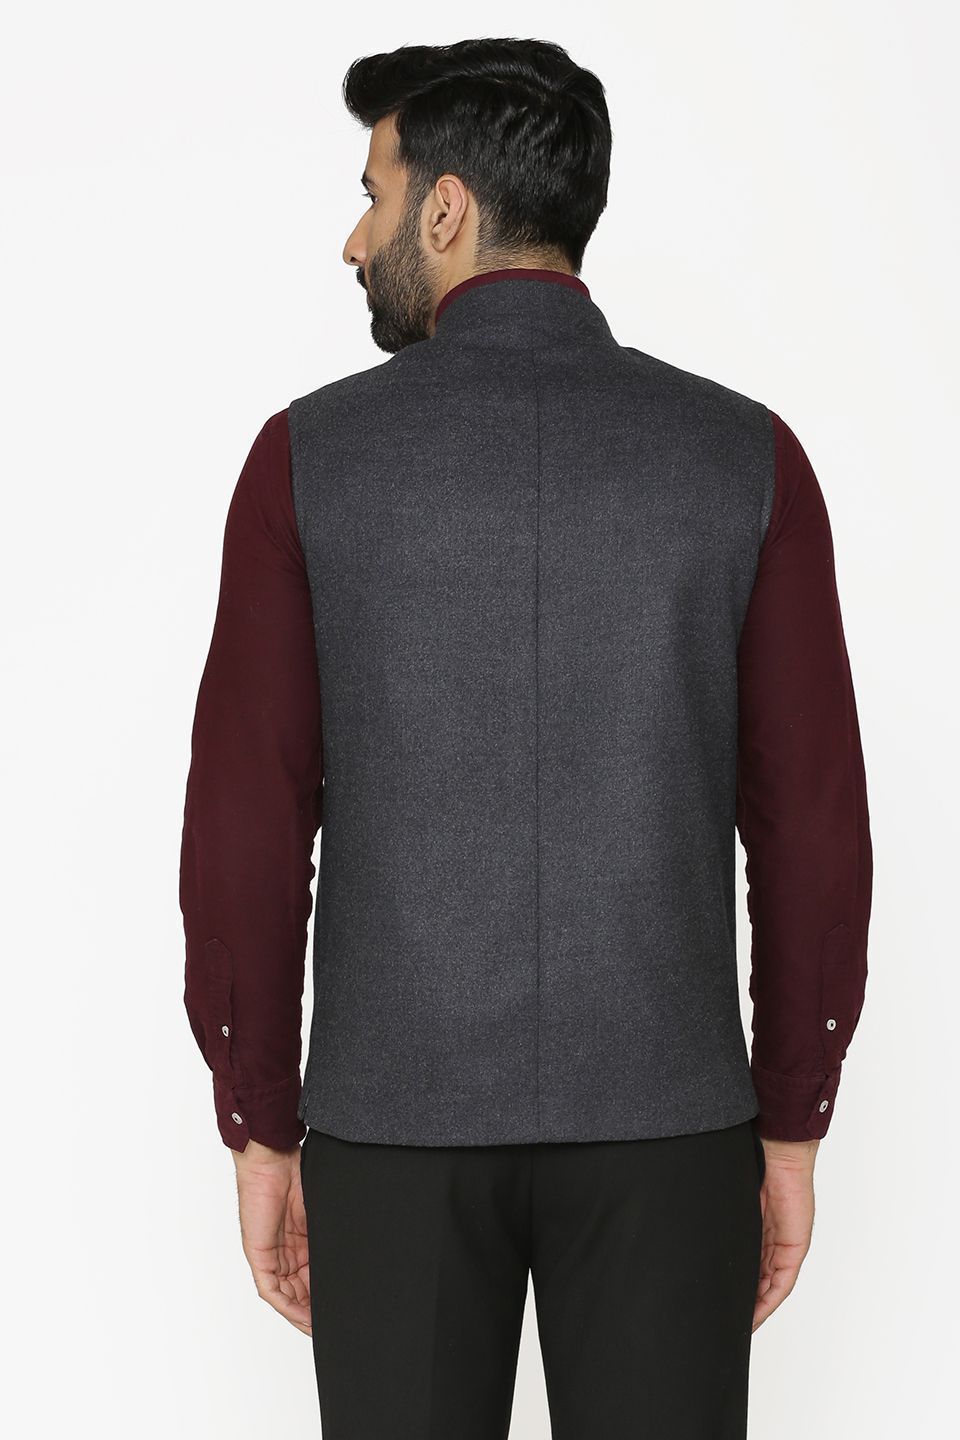 Tweed Wool Grey Nehru Jacket